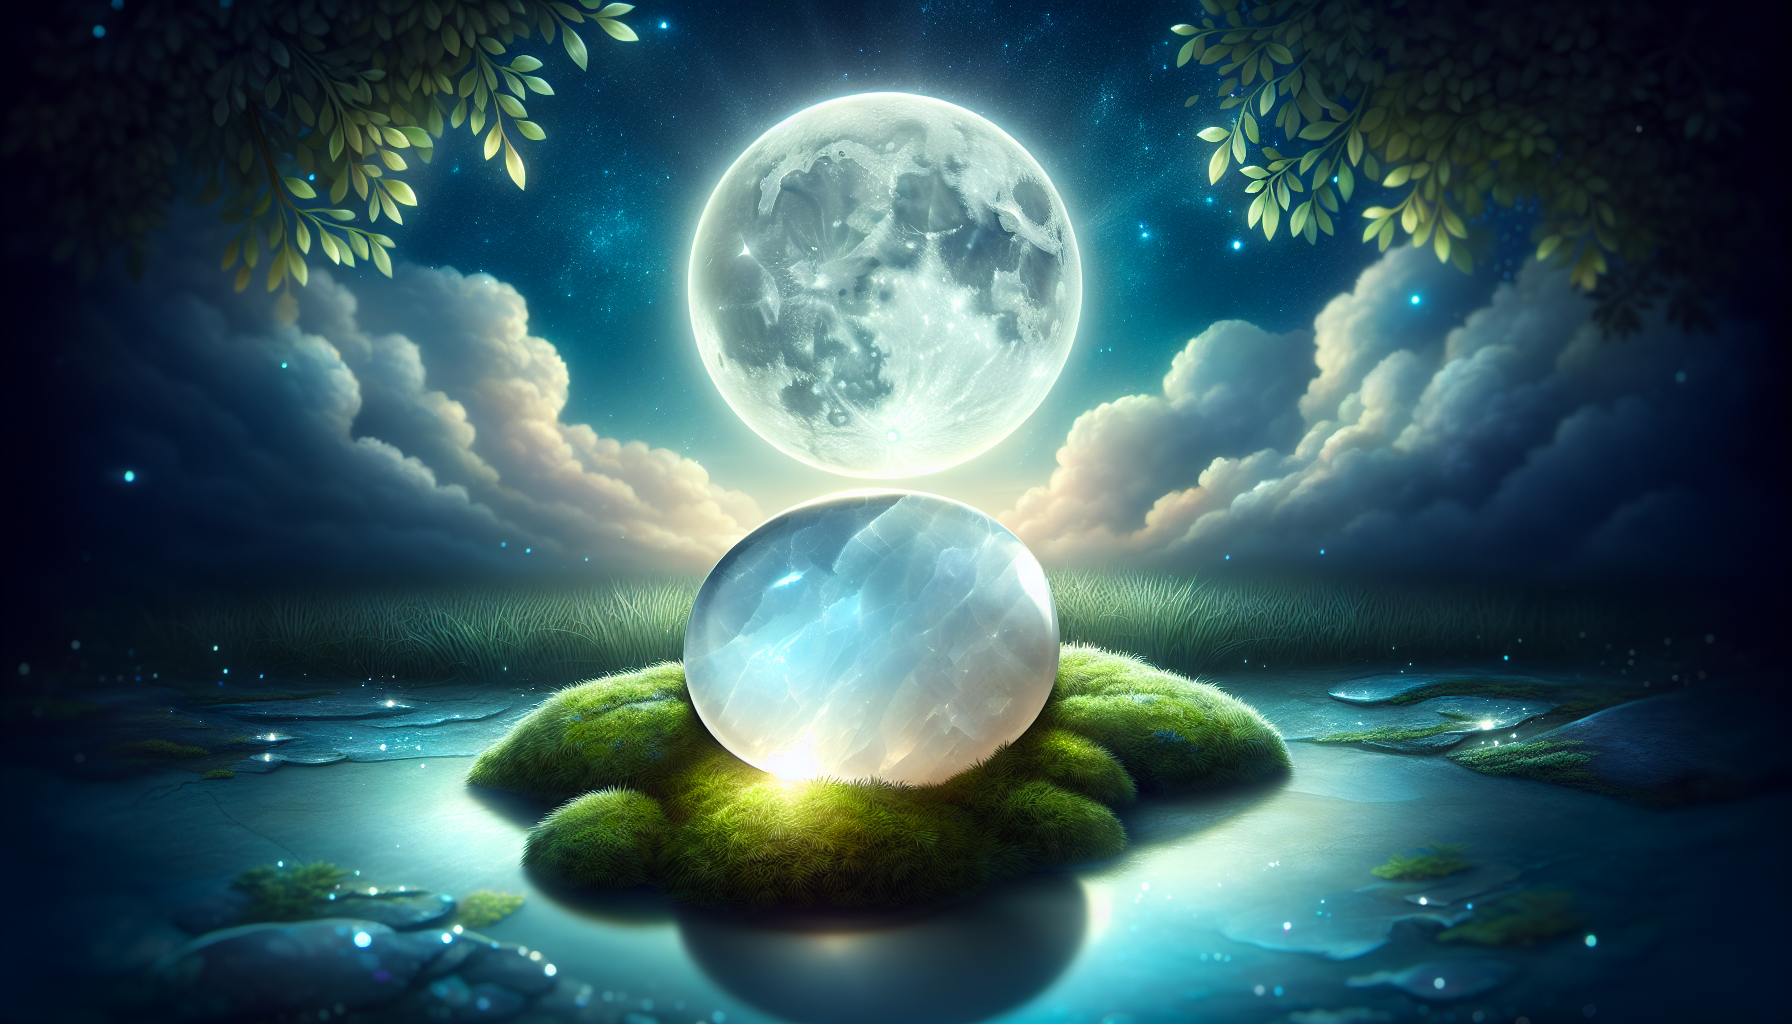 Illustration of moonstone under moonlight